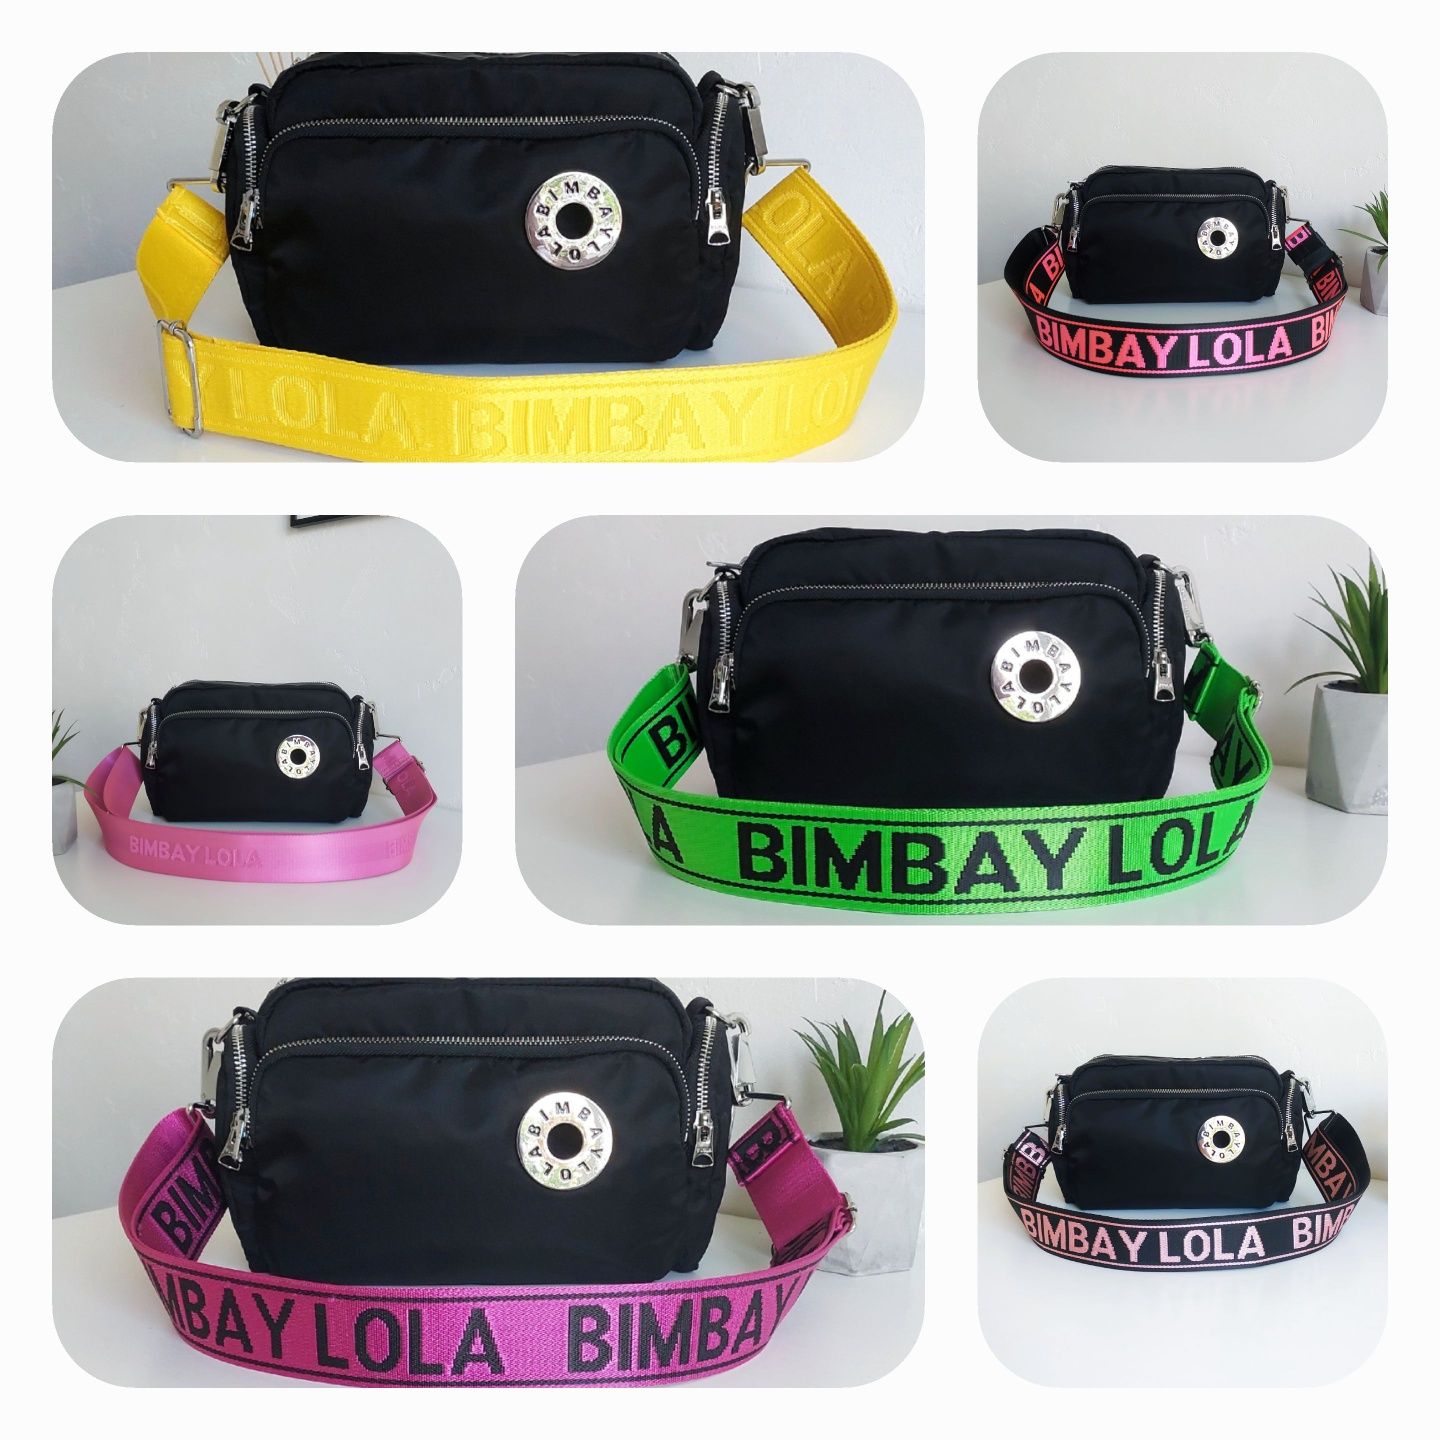 Різнокольорові реміні для сумок Bimba y Lola  Ремень, ремни для сумки